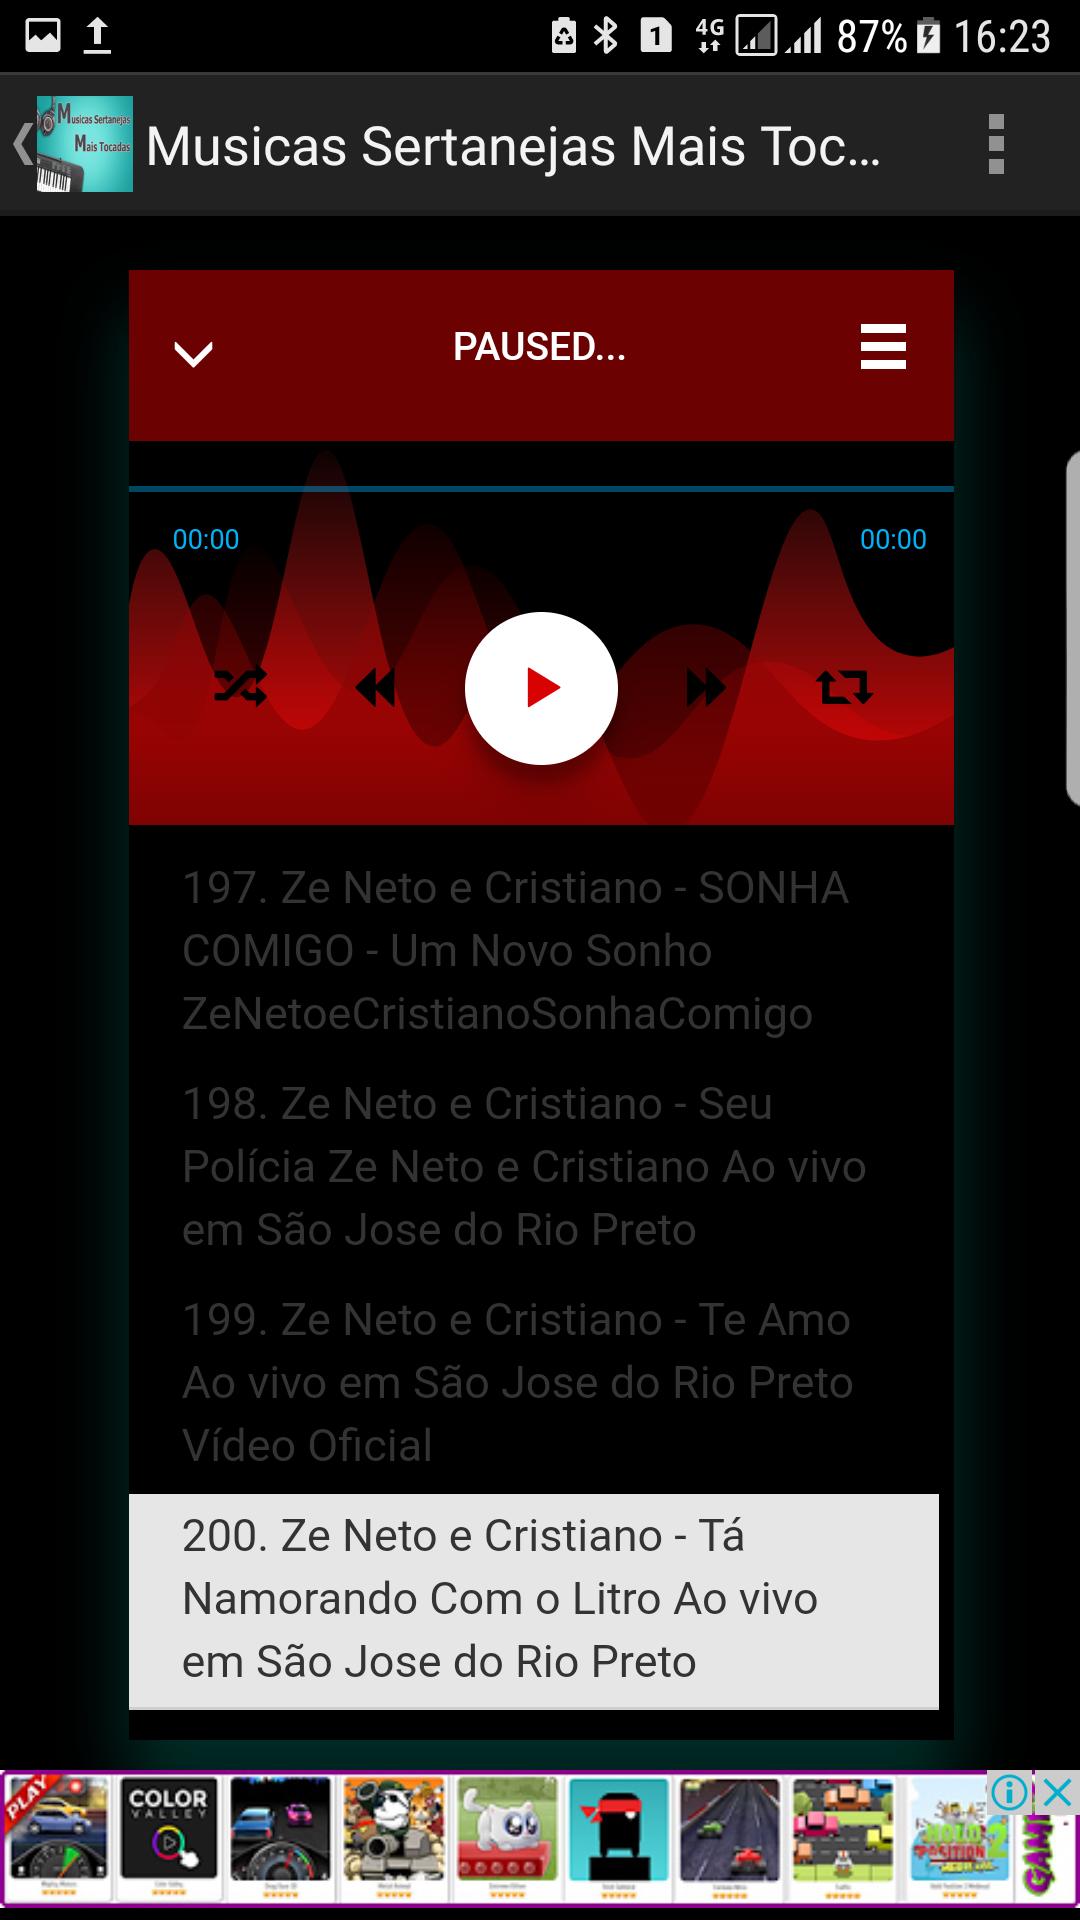 TOP 100 Musicas Sertanejas Mais Tocadas Antigas for Android - APK Download